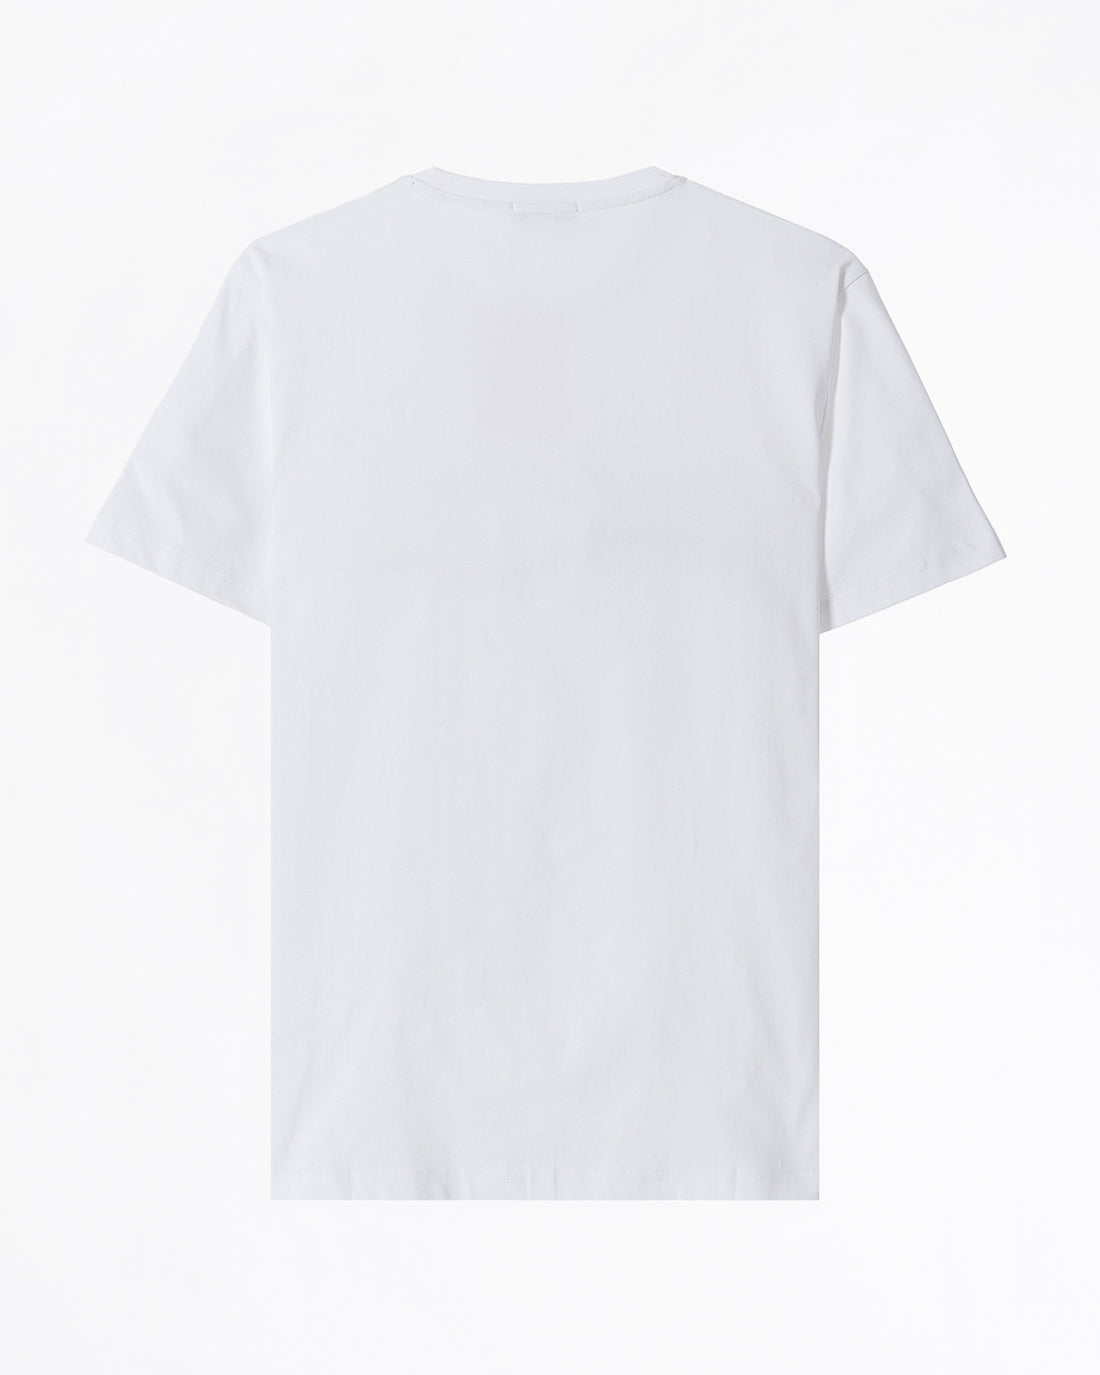 BAL Hologram Logo Men White T-Shirt 52.90